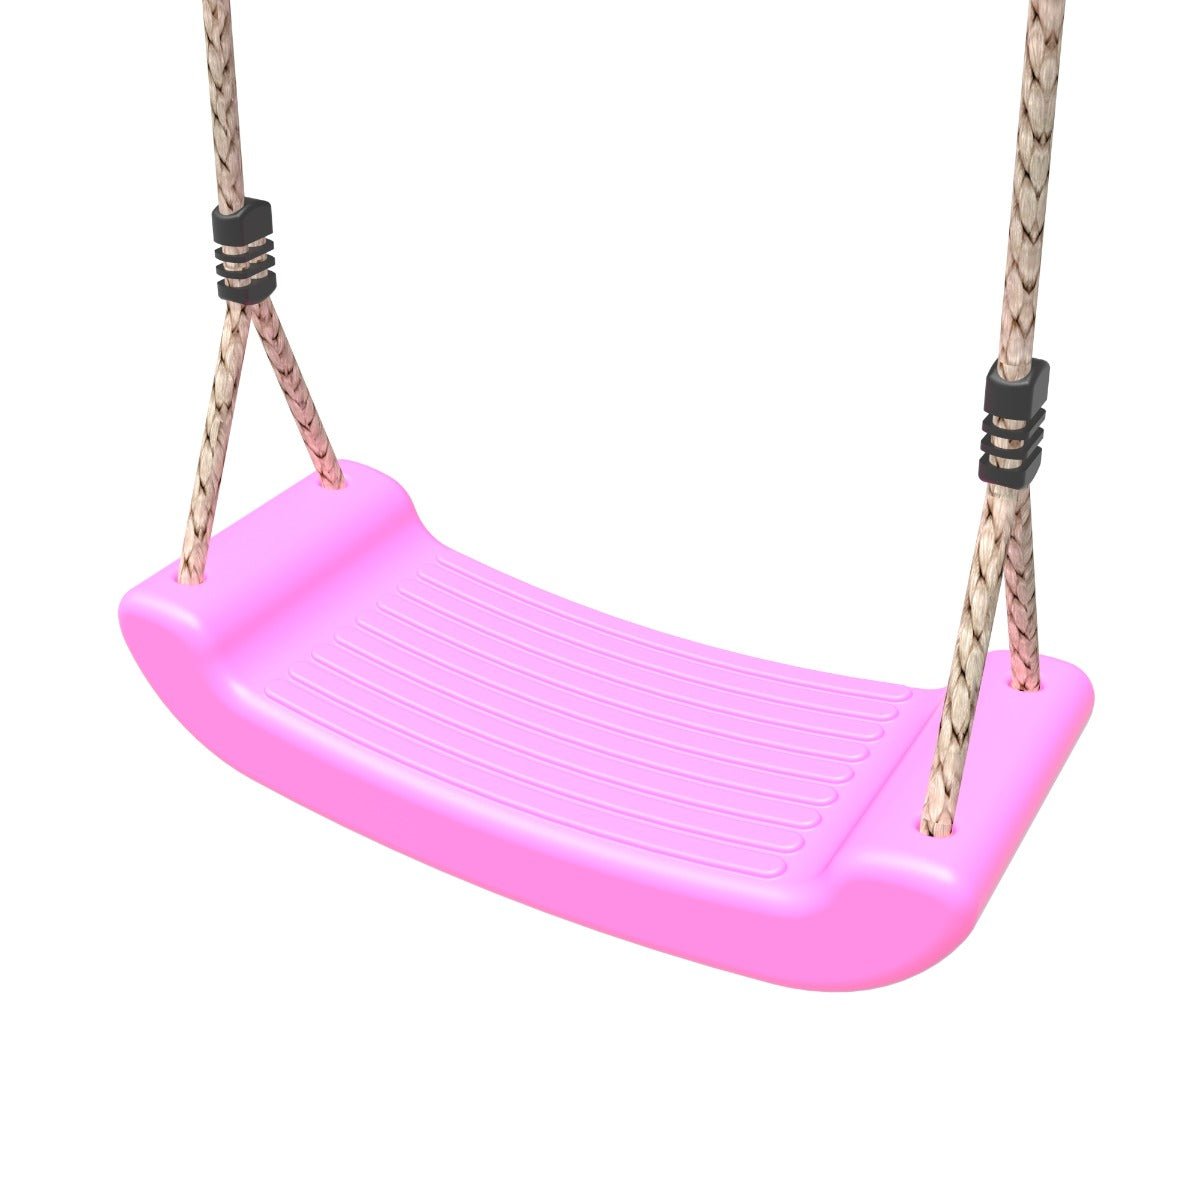 Rebo Swing Seat - Pink